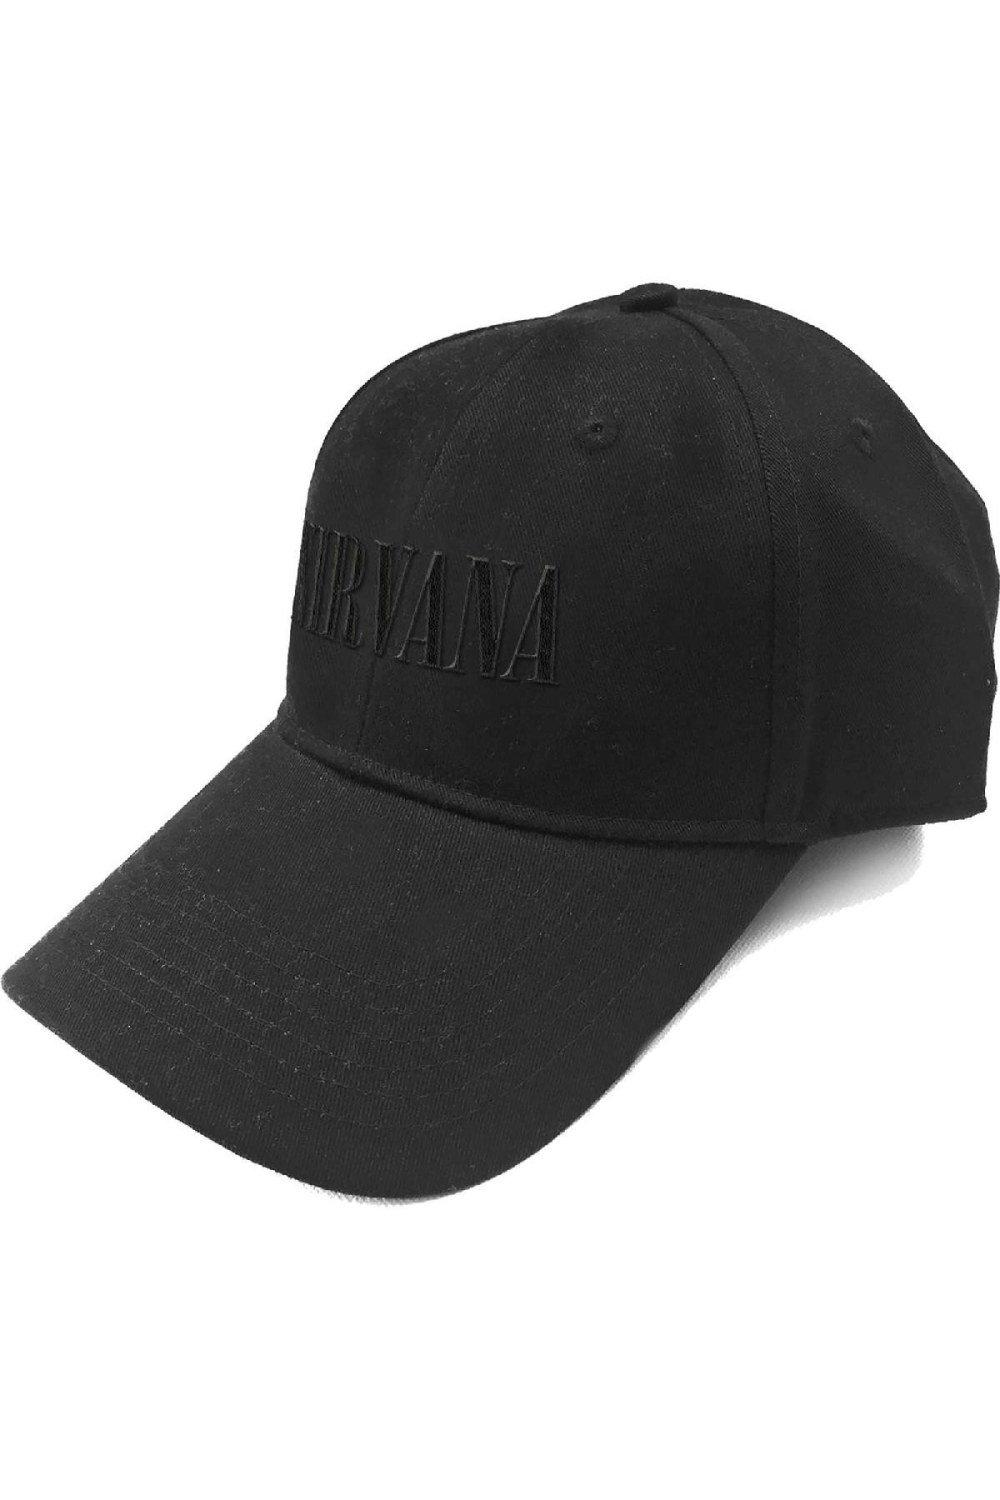 Бейсбольная кепка с текстовым логотипом Nirvana, черный